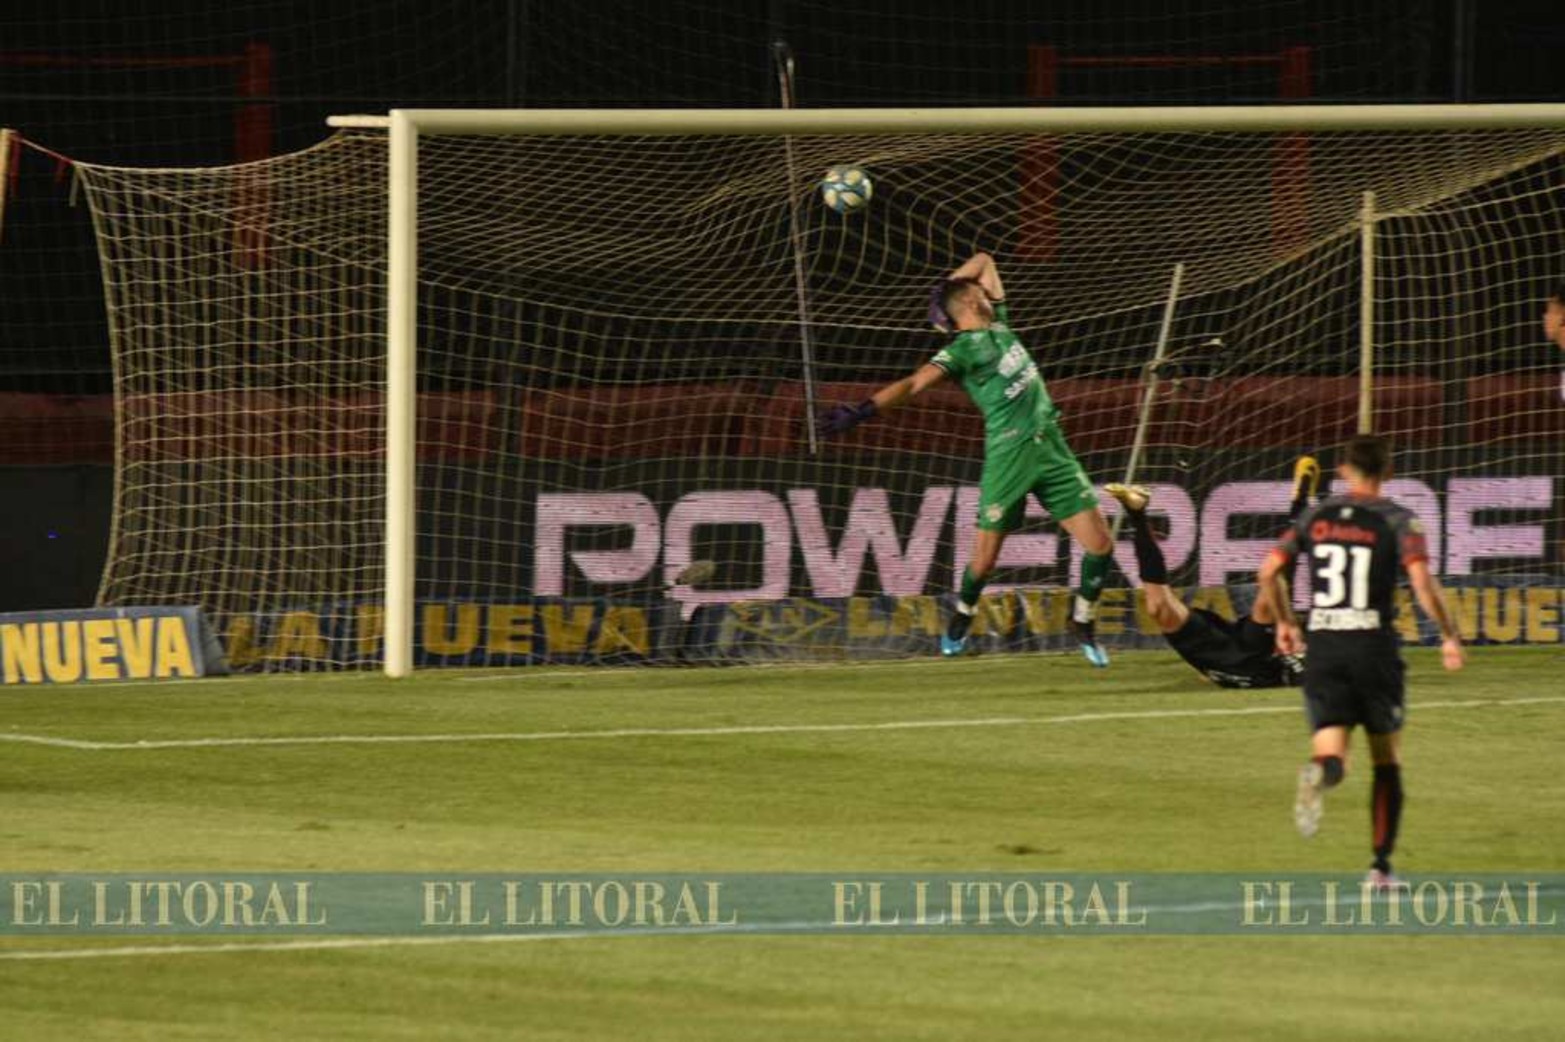 El gol de Cristián Bernardi desde otro angulo tonada por la otra cámara de diario El Litoral.